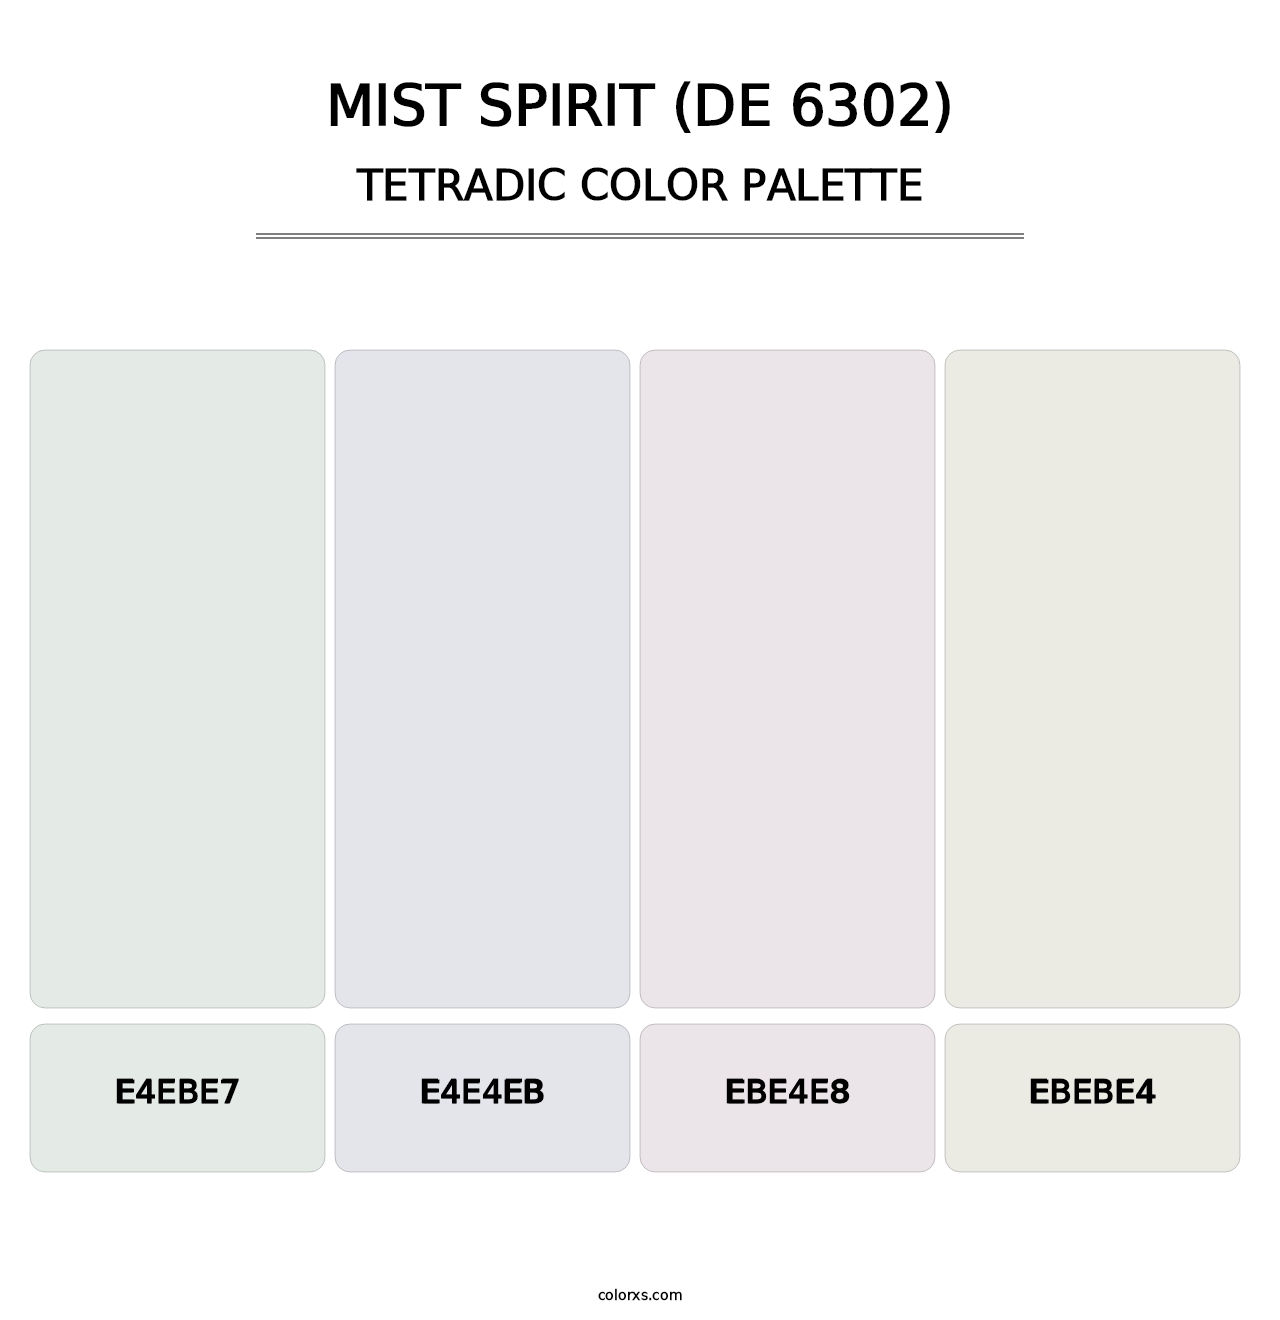 Mist Spirit (DE 6302) - Tetradic Color Palette